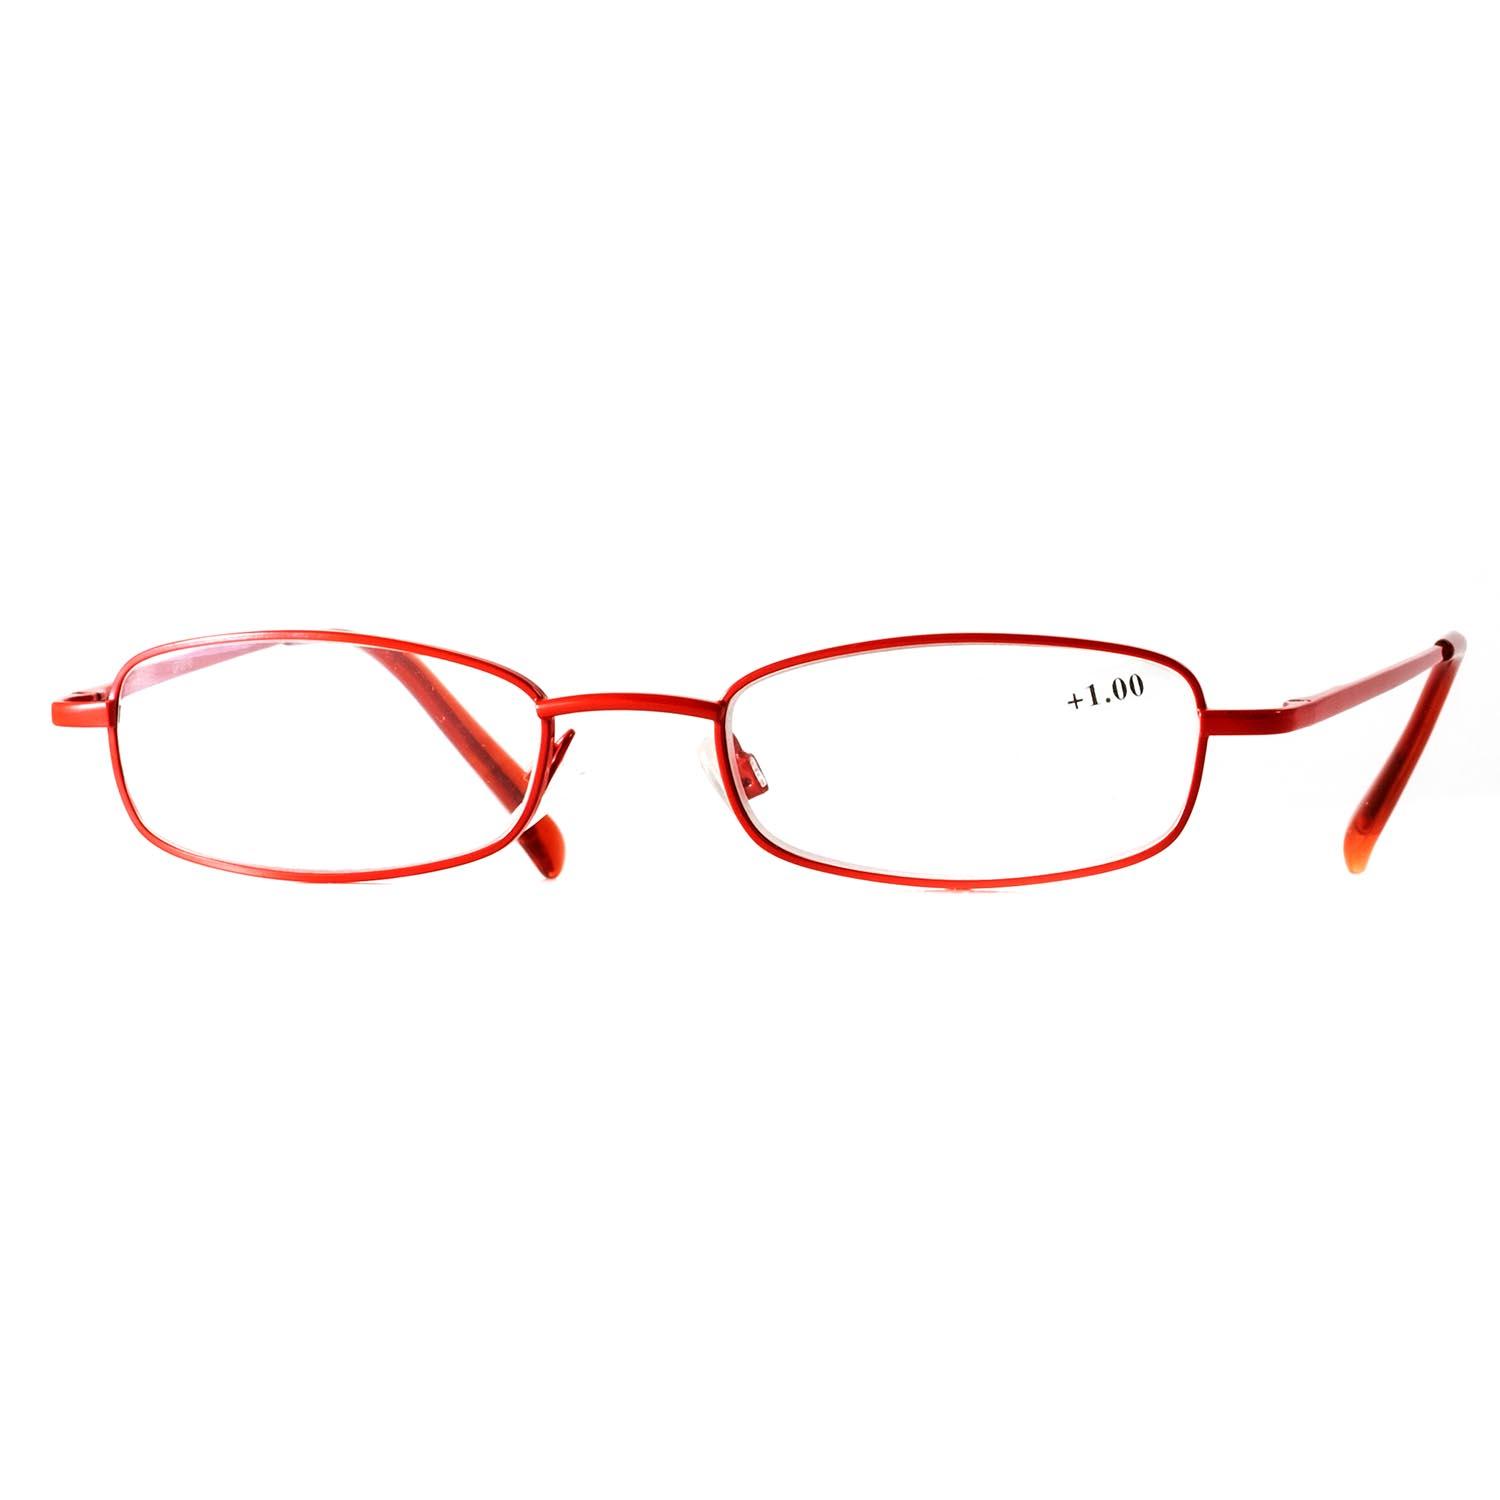 Gafas de lectura metálicas color rojo con aumento +1,00.